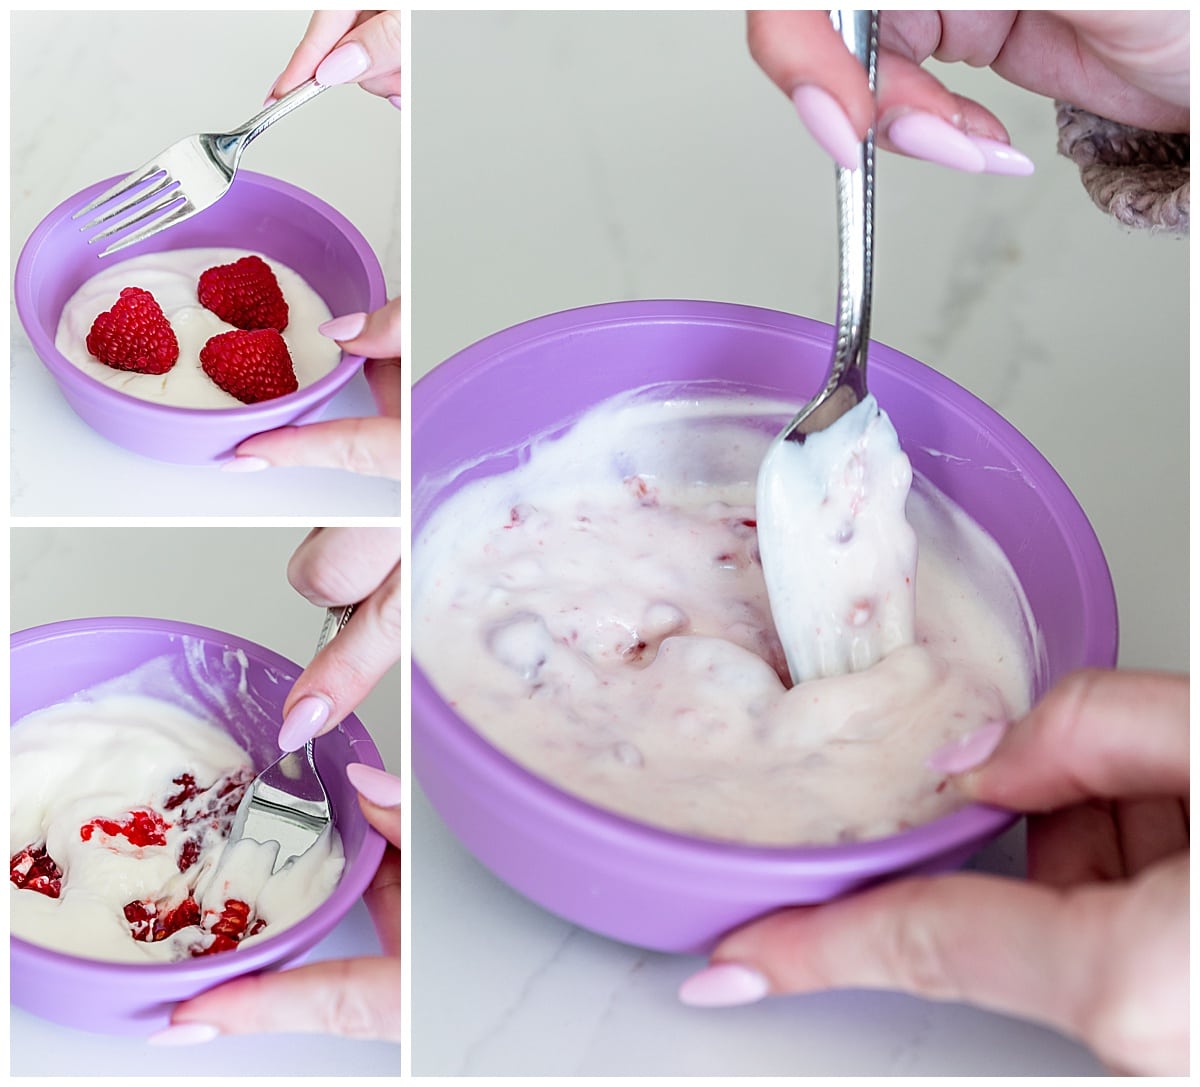 Mixing raspberries in yogurt in a purple kids bowl